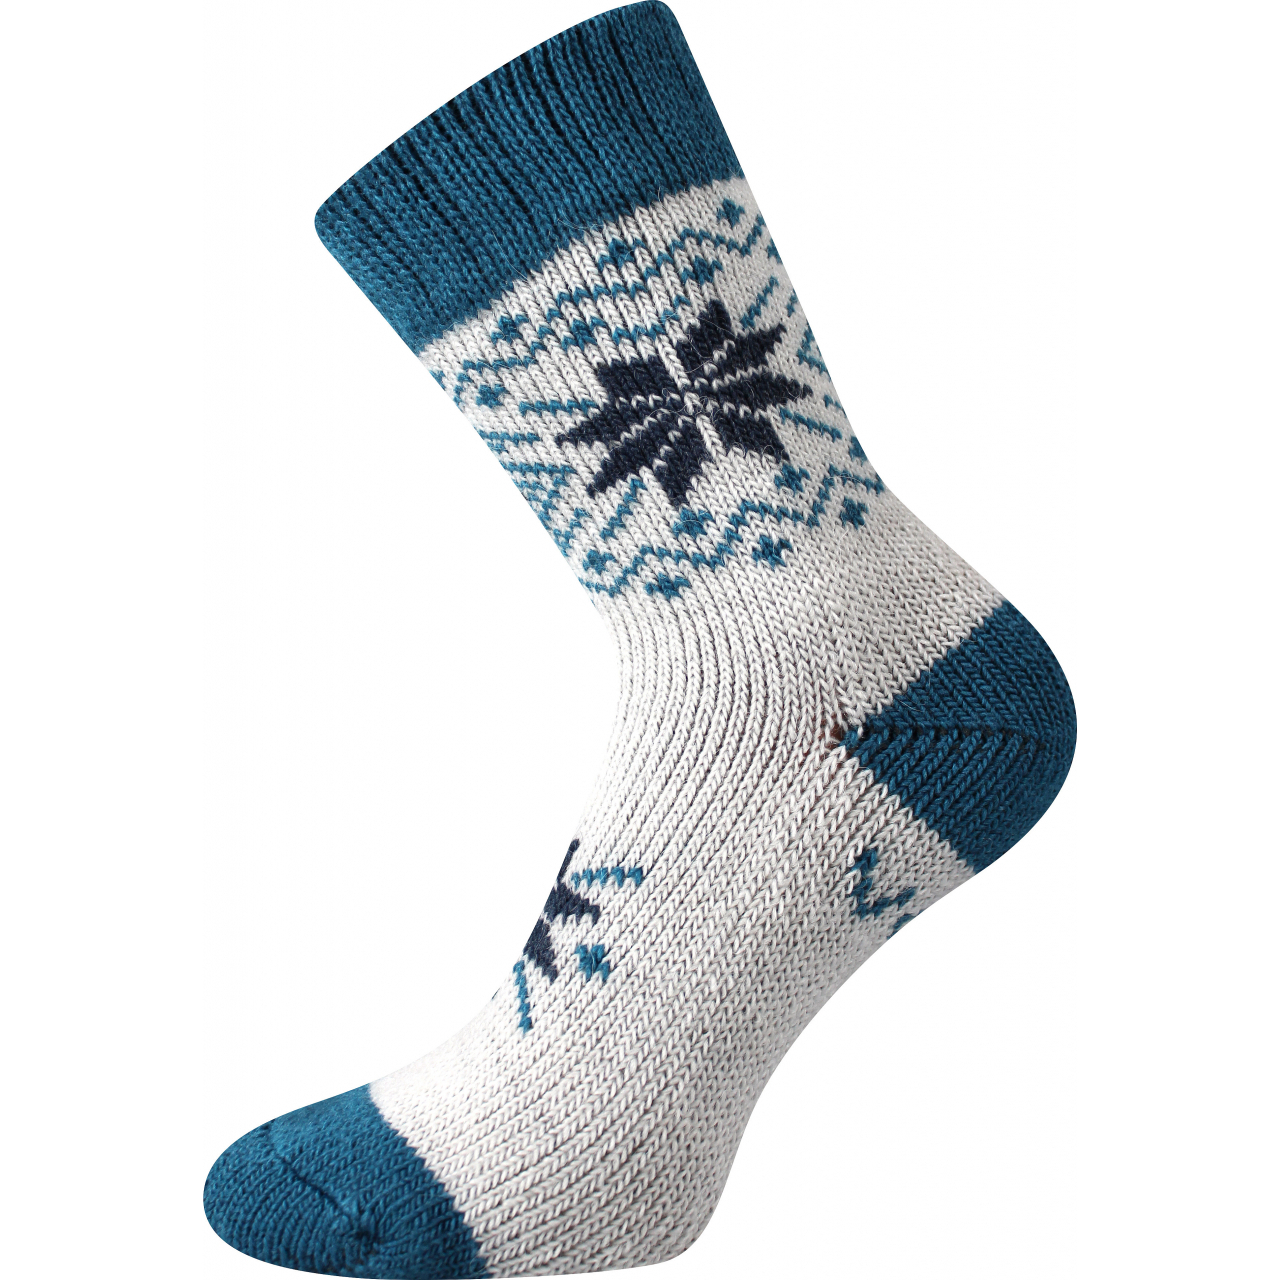 Ponožky unisex vlněné Voxx Alta - bílé-modré, 43-46